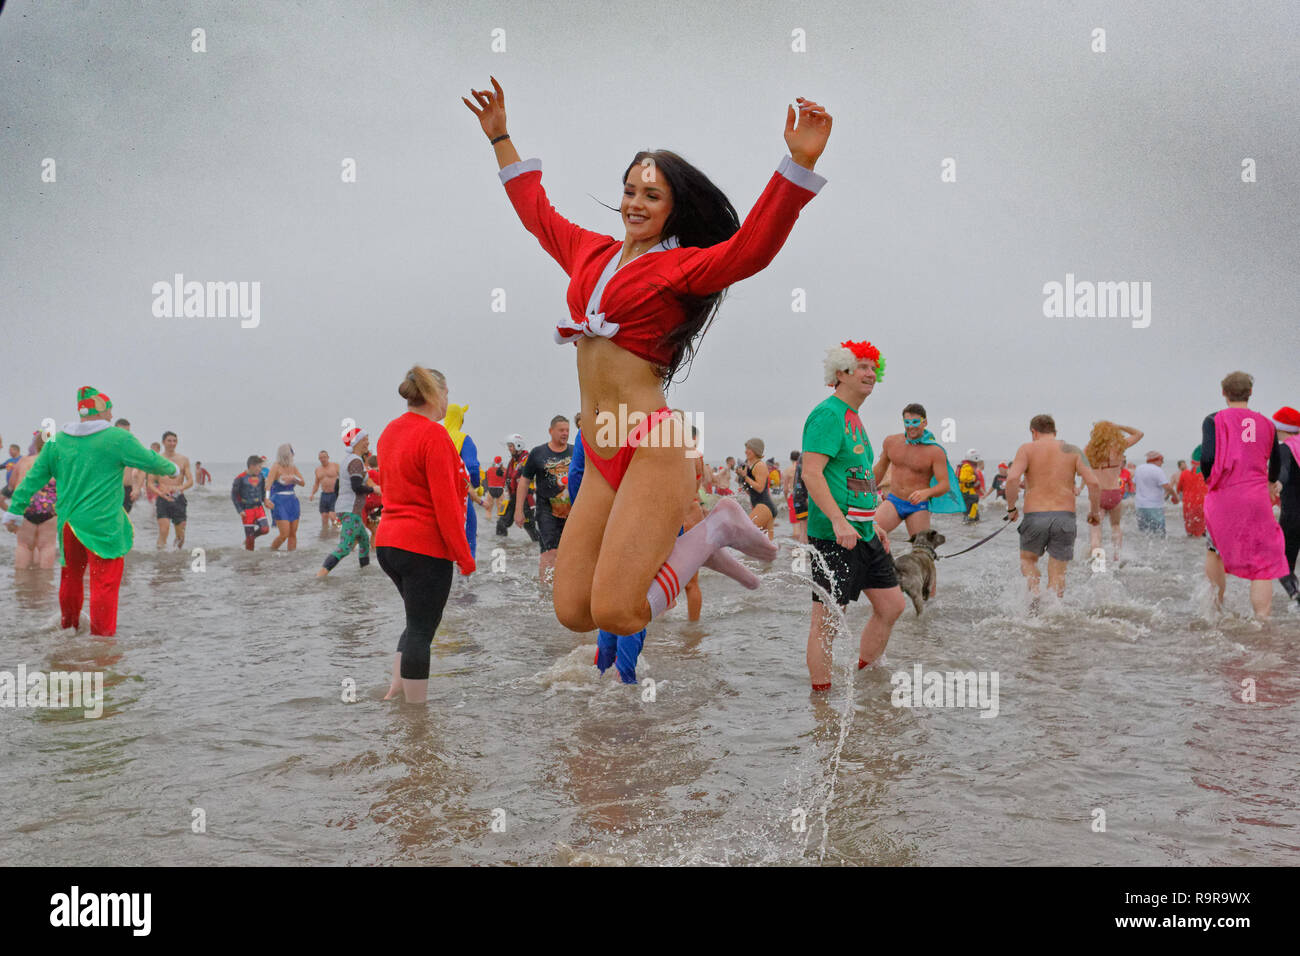 Im Bild: Eine junge Frau in einem Santa Outfit springt in das Meer. Dienstag, 25 Dezember 2018 Re: Hunderte Menschen beteiligen sich an der diesjährigen Porthcawl Christm Stockfoto